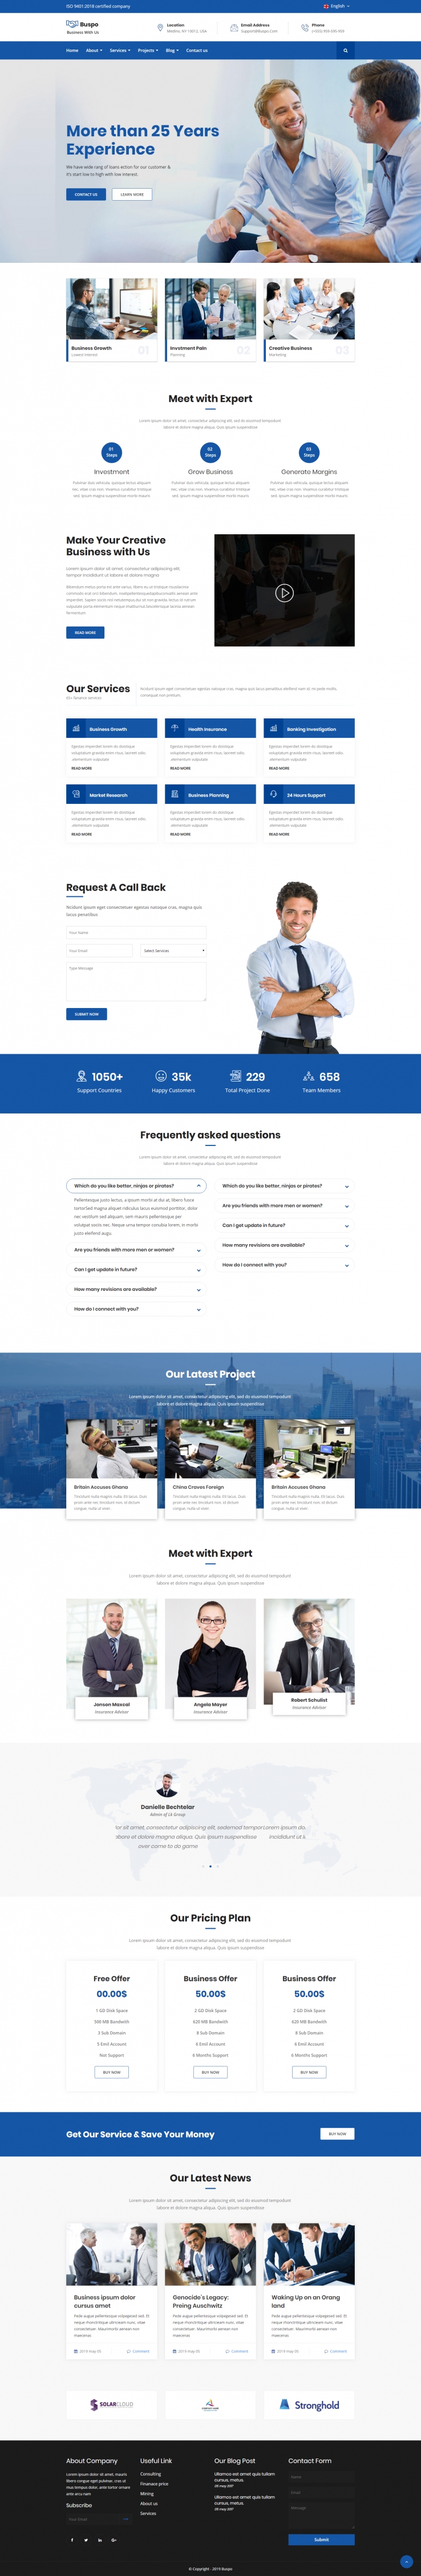 蓝色欧美风格的商业业务管理企业网站源码下载